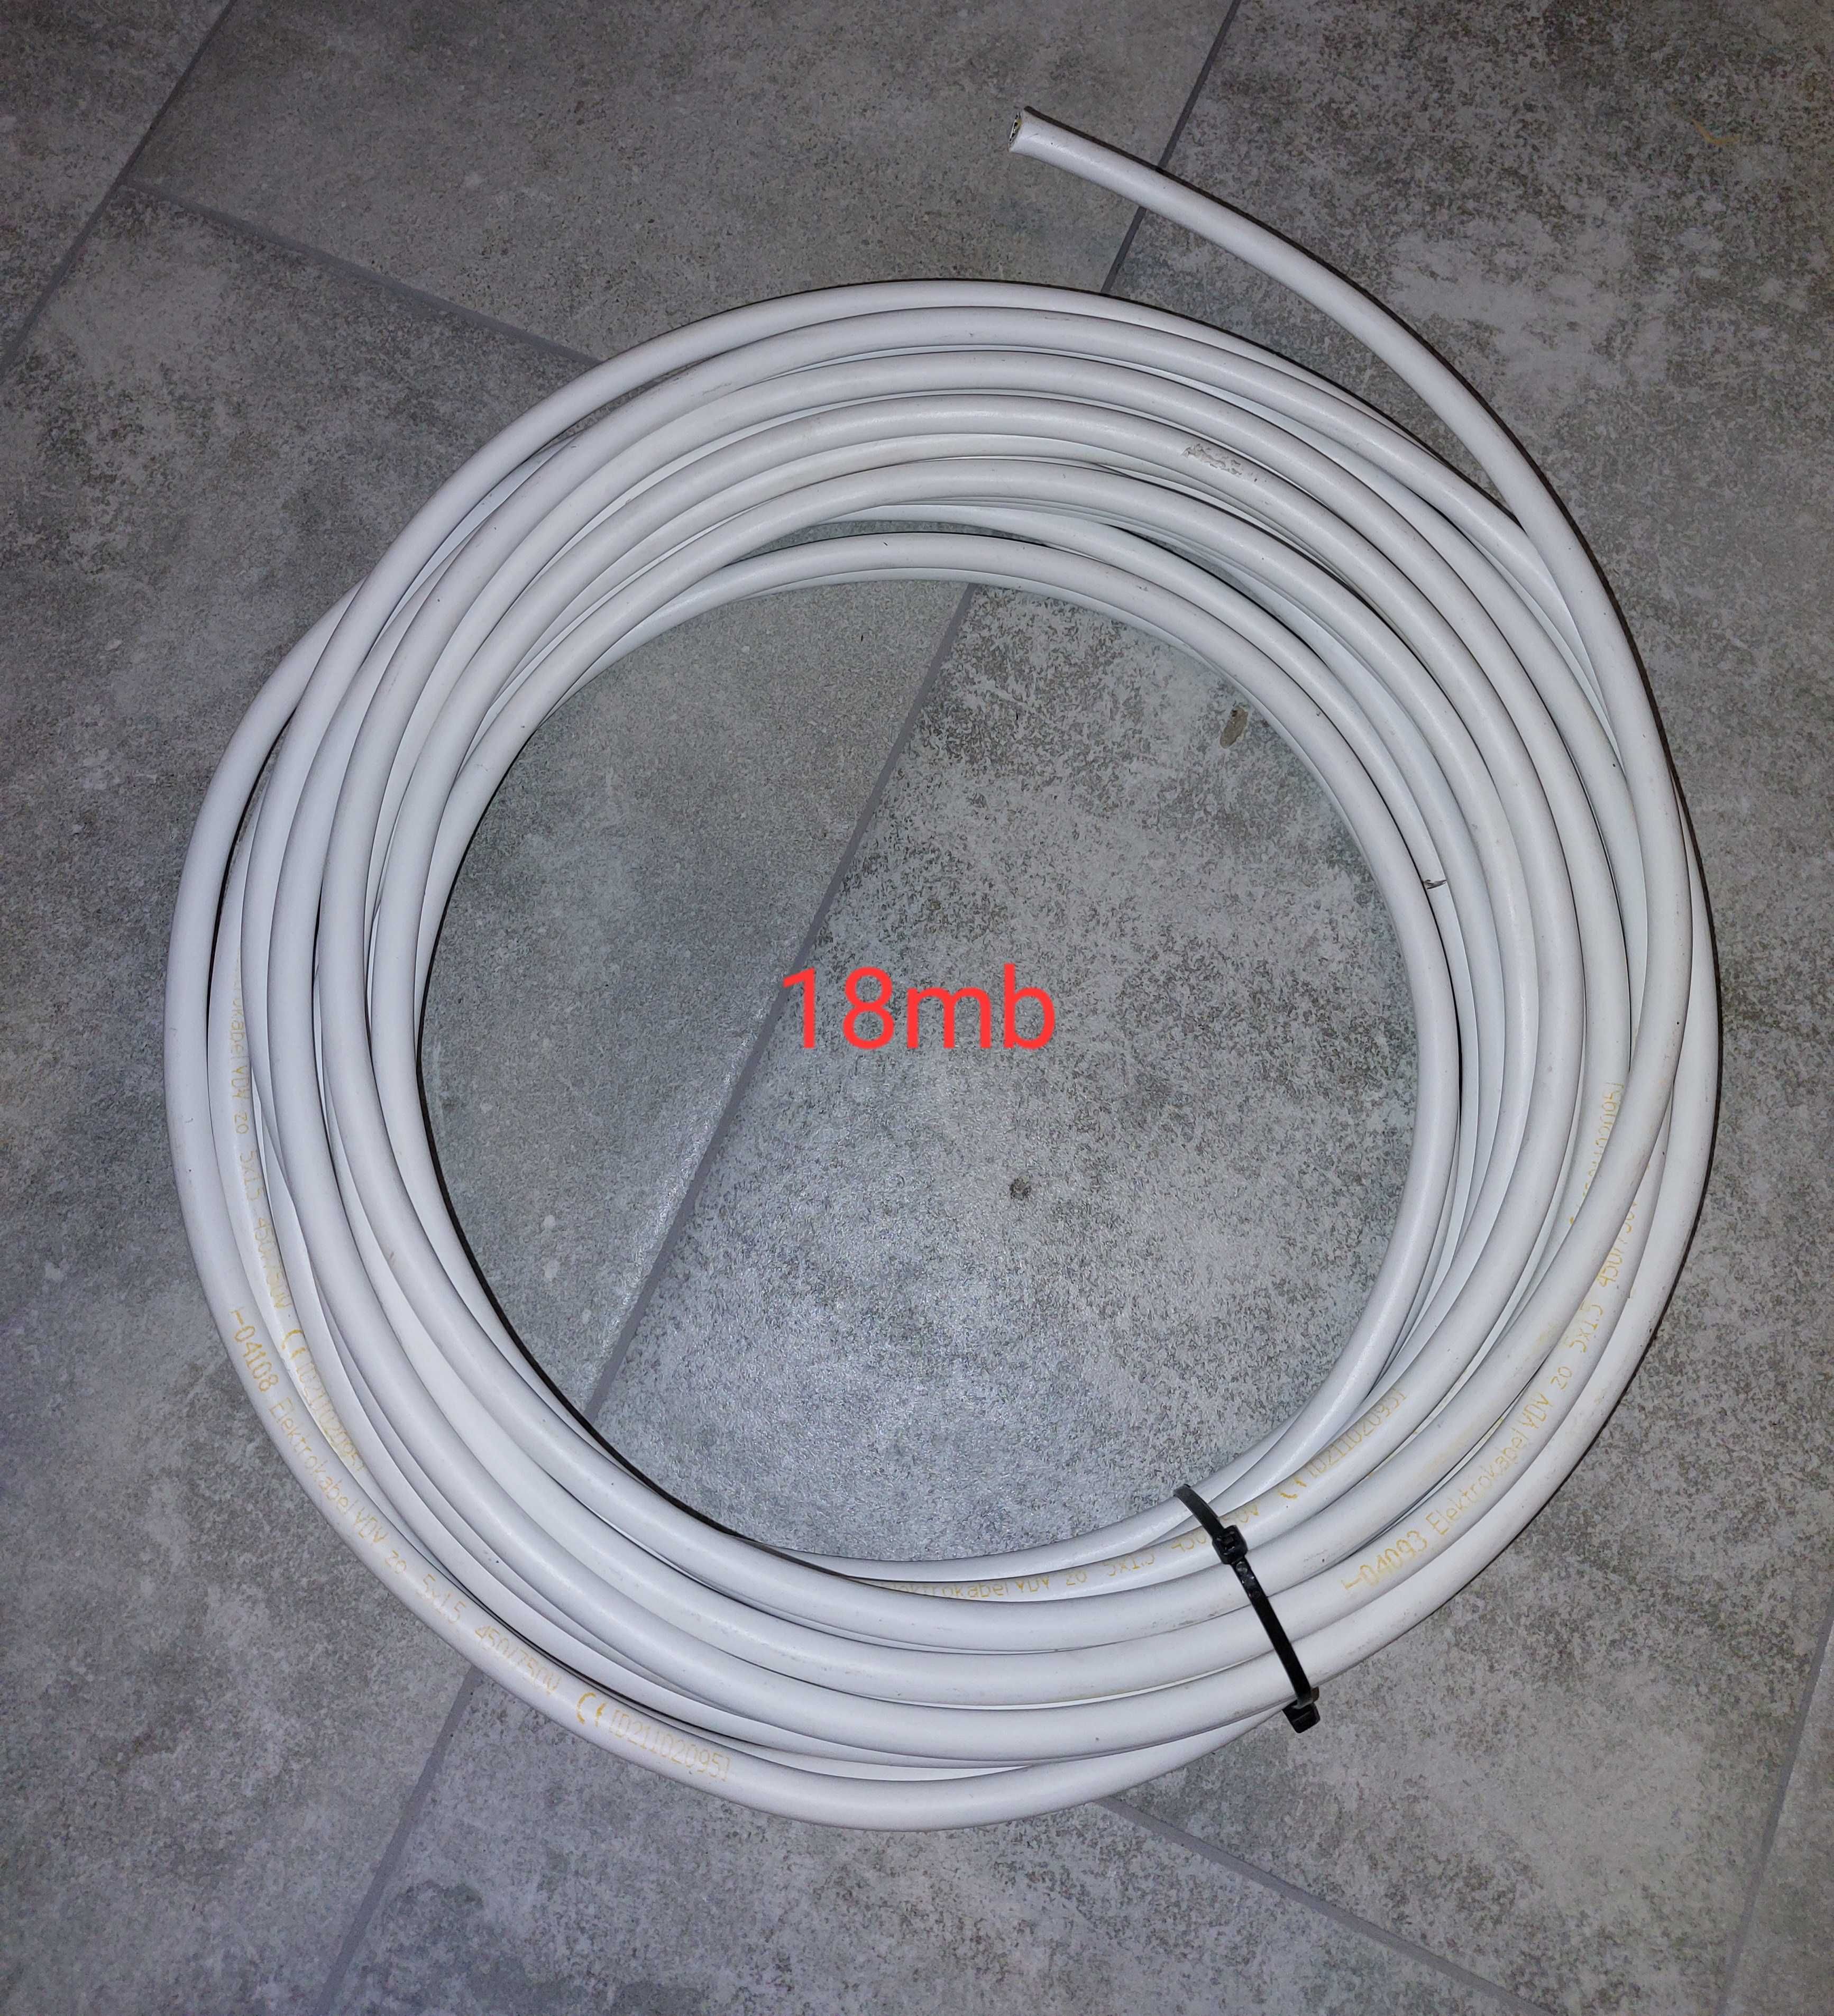 Sprzedam kabel elektrokabel ydy 5x1,5 mm2 20mb gratis wtyczka 5p 16a.